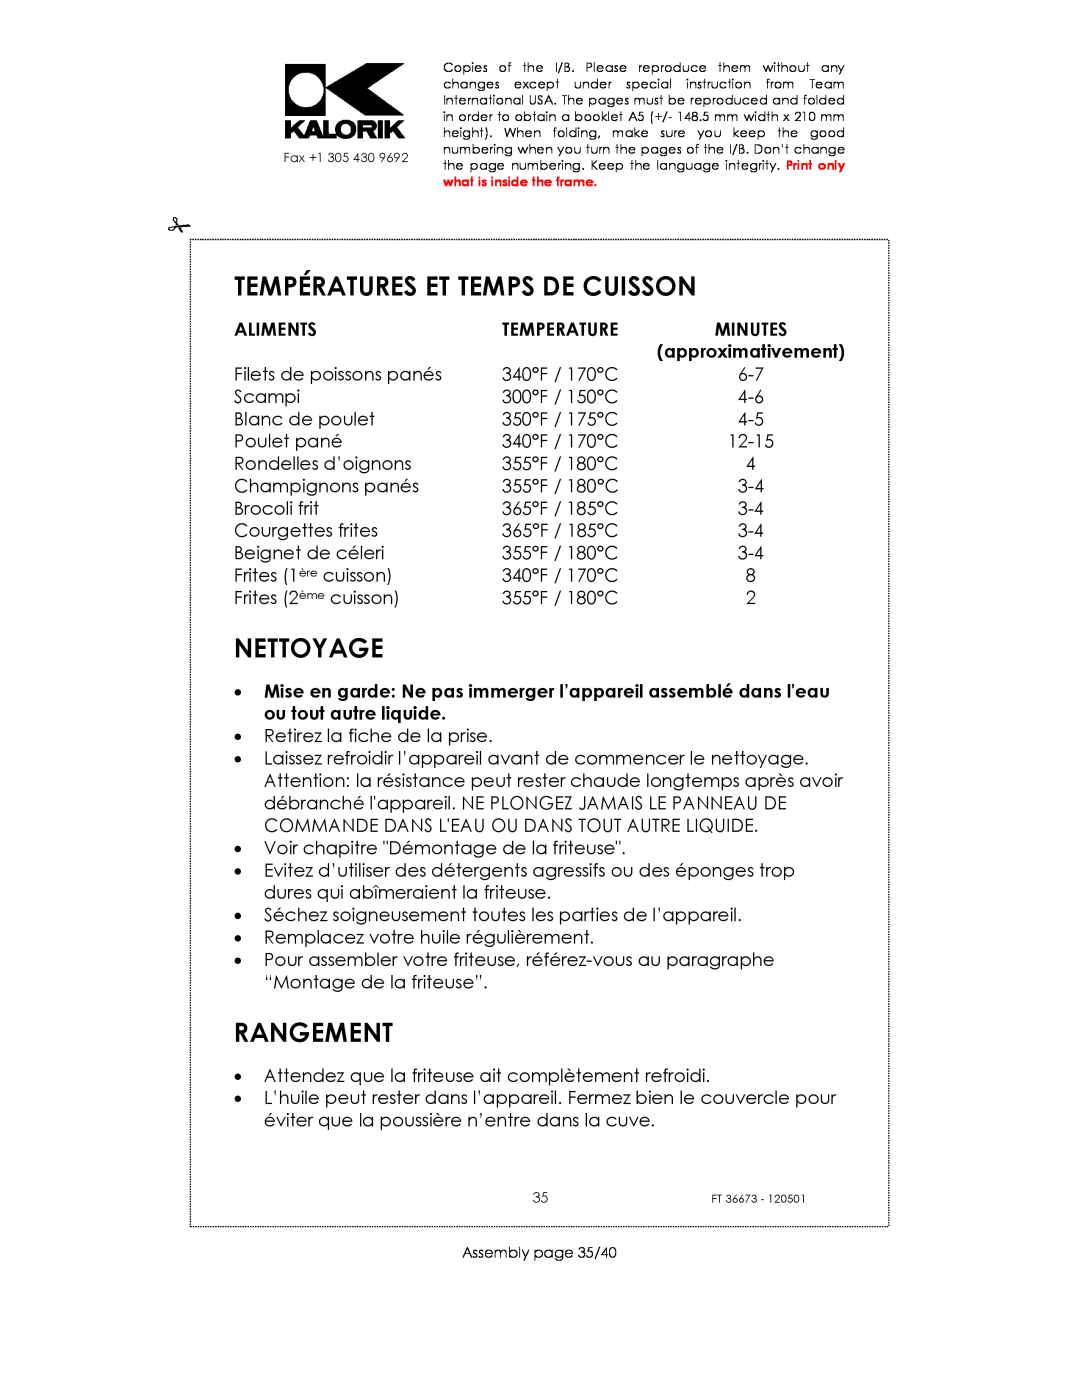 Kalorik USK FT 36673 manual Températures Et Temps De Cuisson, Nettoyage, Rangement, Aliments, Temperature 